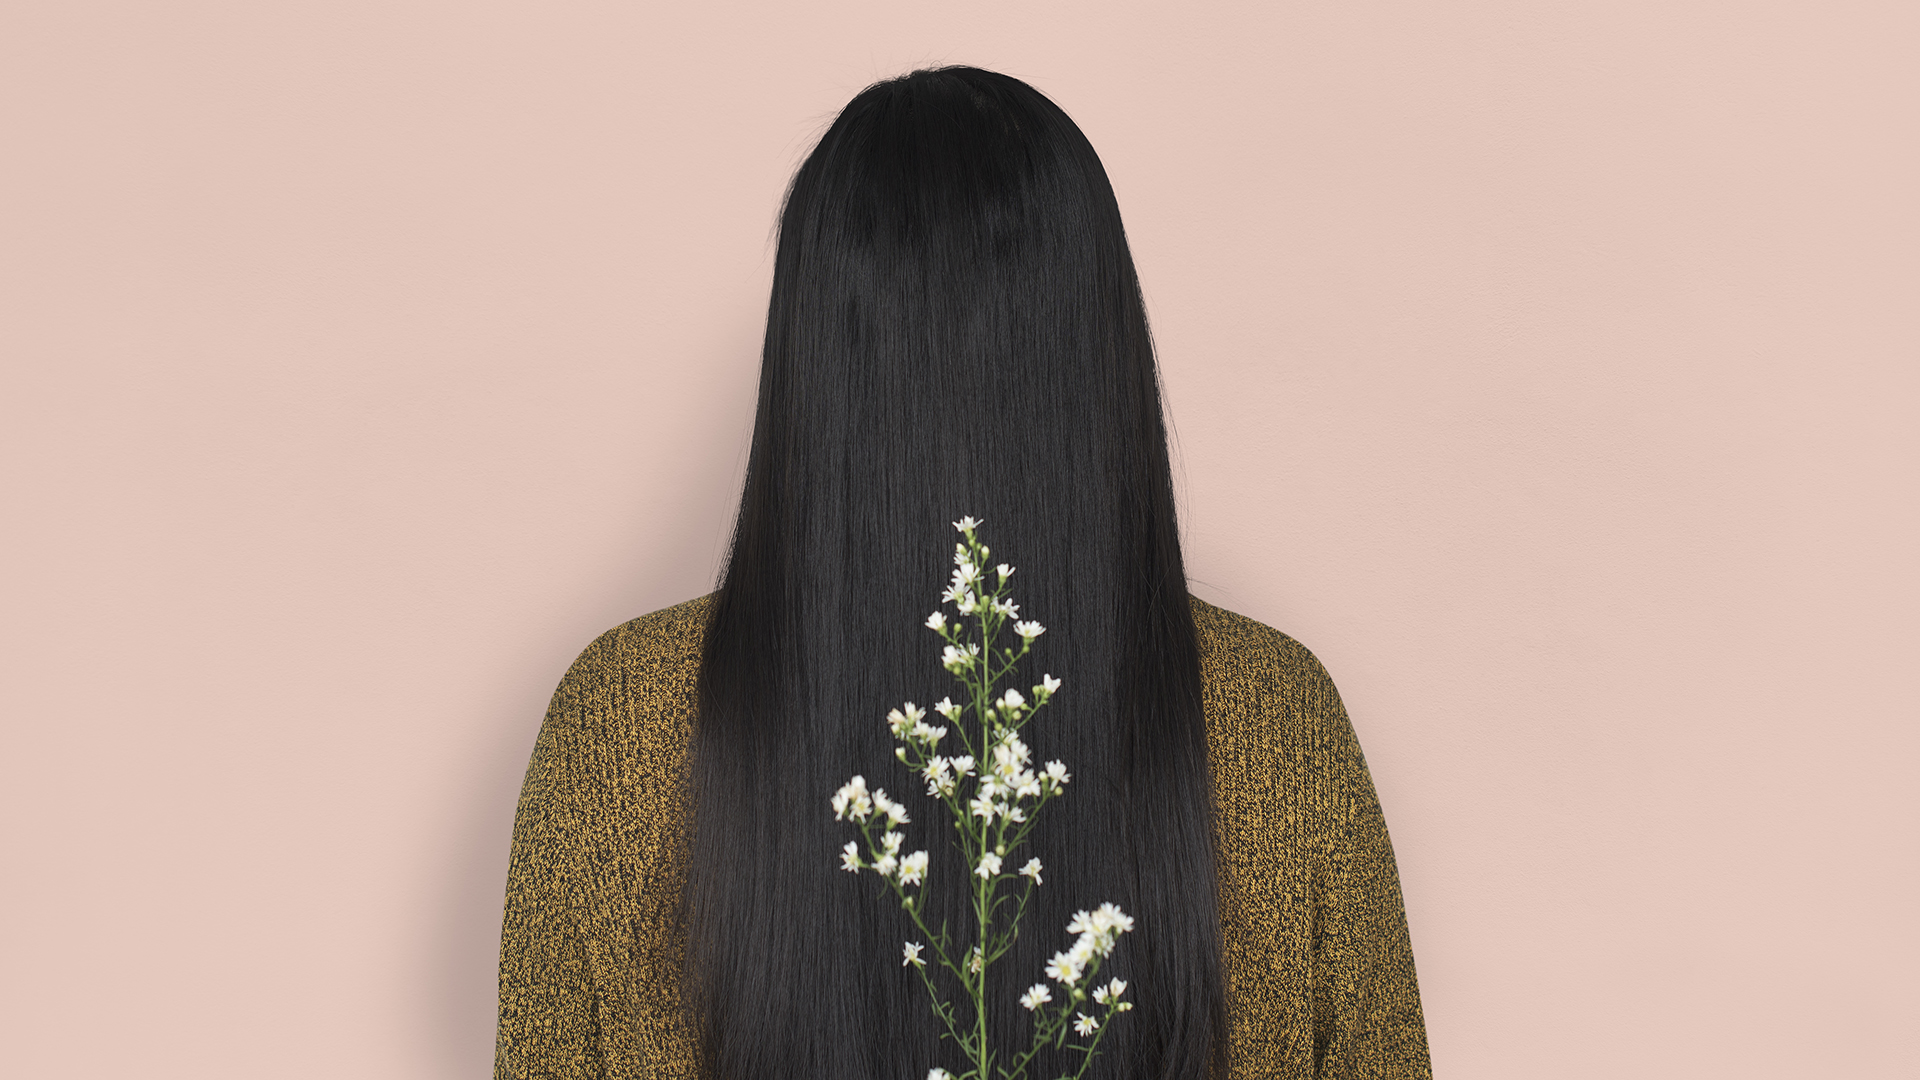 Eine weibliche Person, vom hinten zu sehen, vor einem puderfarbenen Hintergrund, mit schwarzen Haaren. Mittig im Vordergrund ein Zweig Schleierkraut.